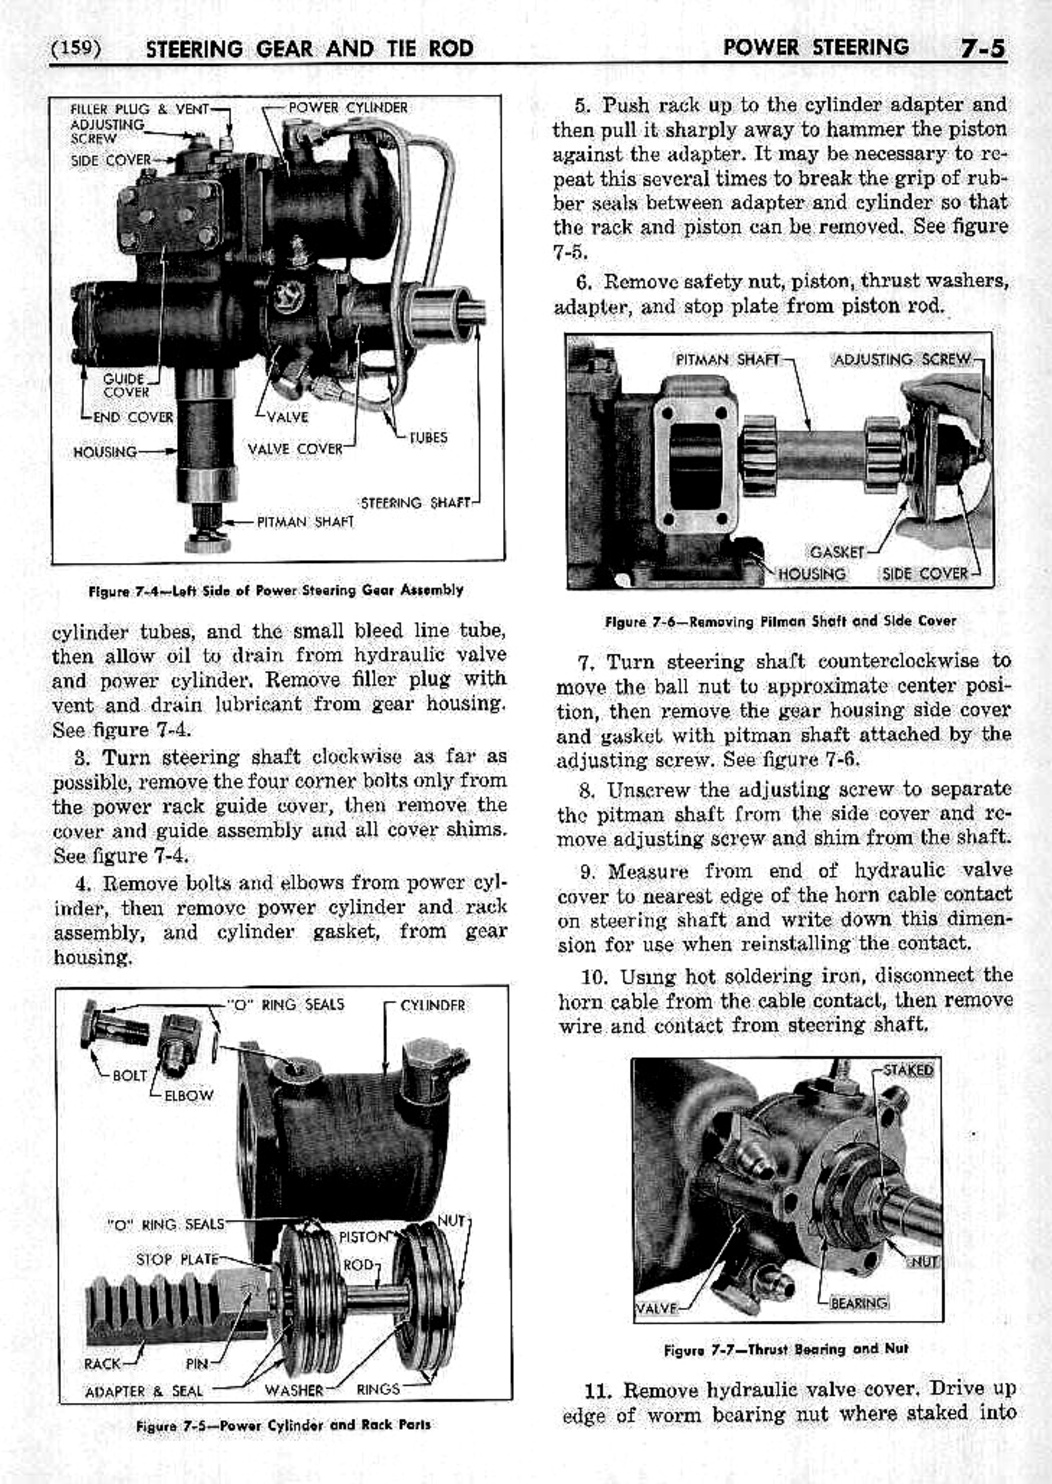 n_08 1953 Buick Shop Manual - Steering-005-005.jpg